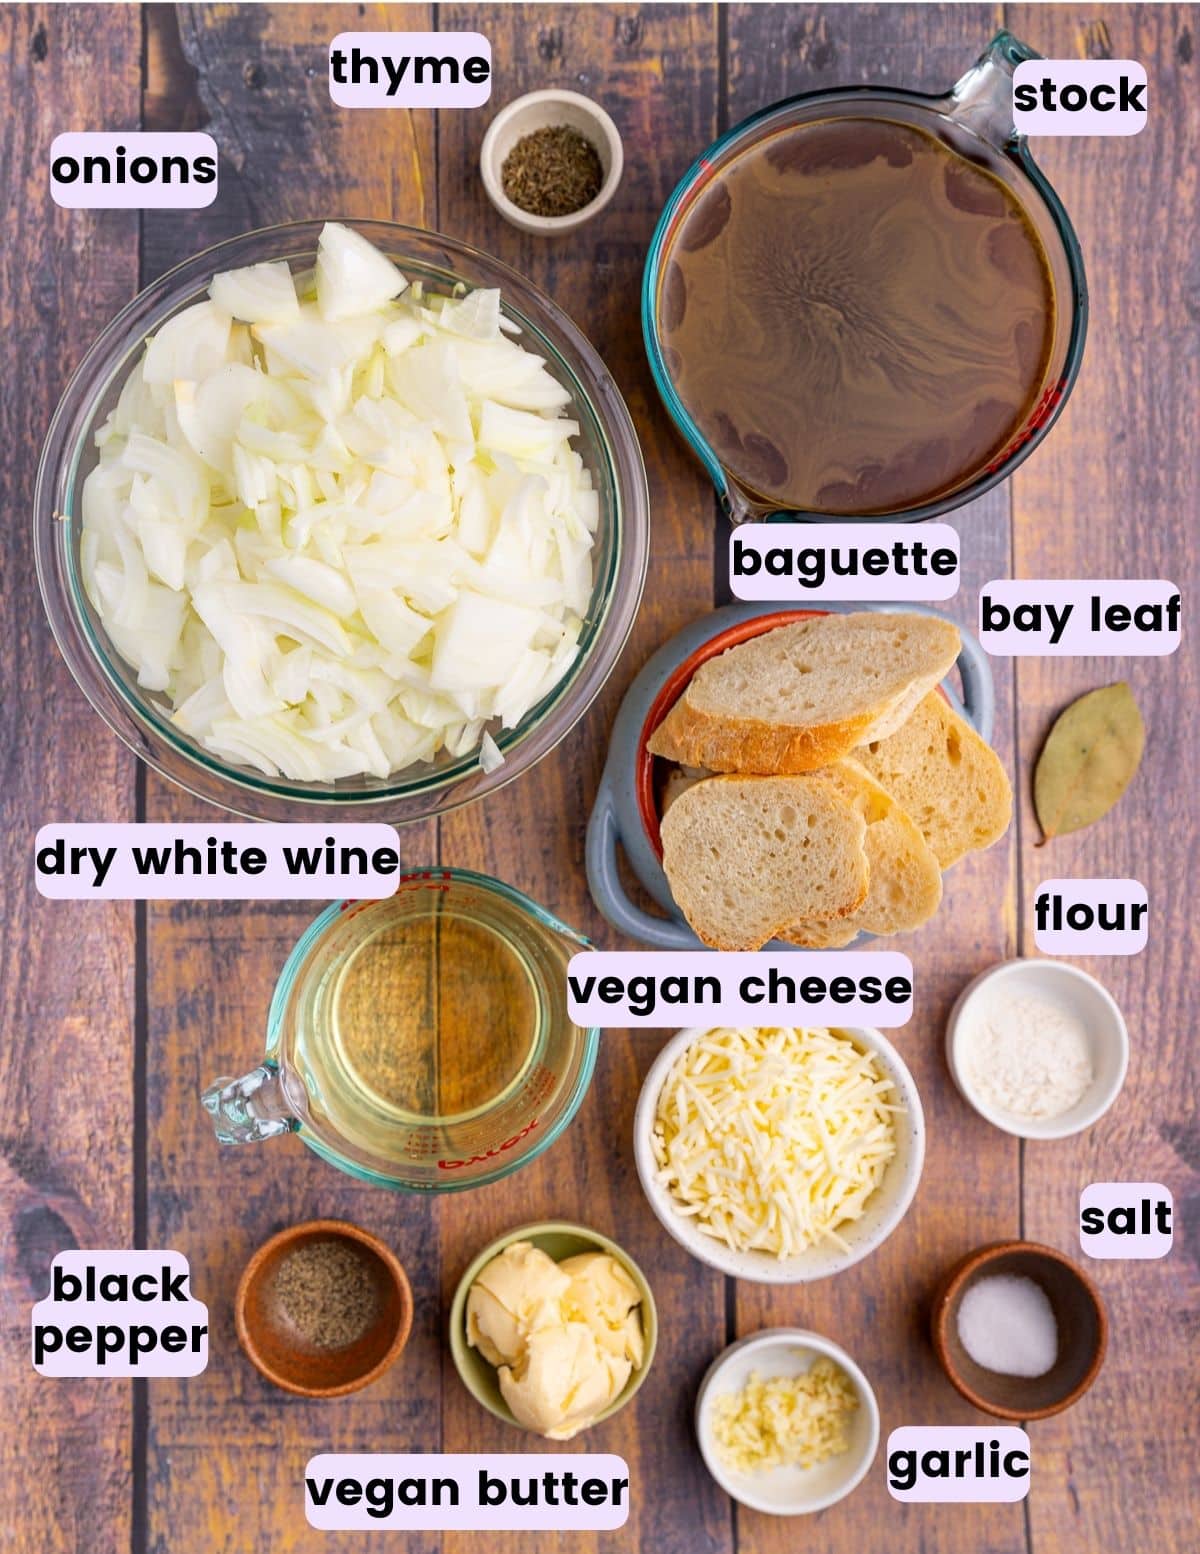 thyme, onions, stock, baguette, bay leaf, dry white wine, vegan cheese, flour, black pepper, vegan butter, garlic, salt.